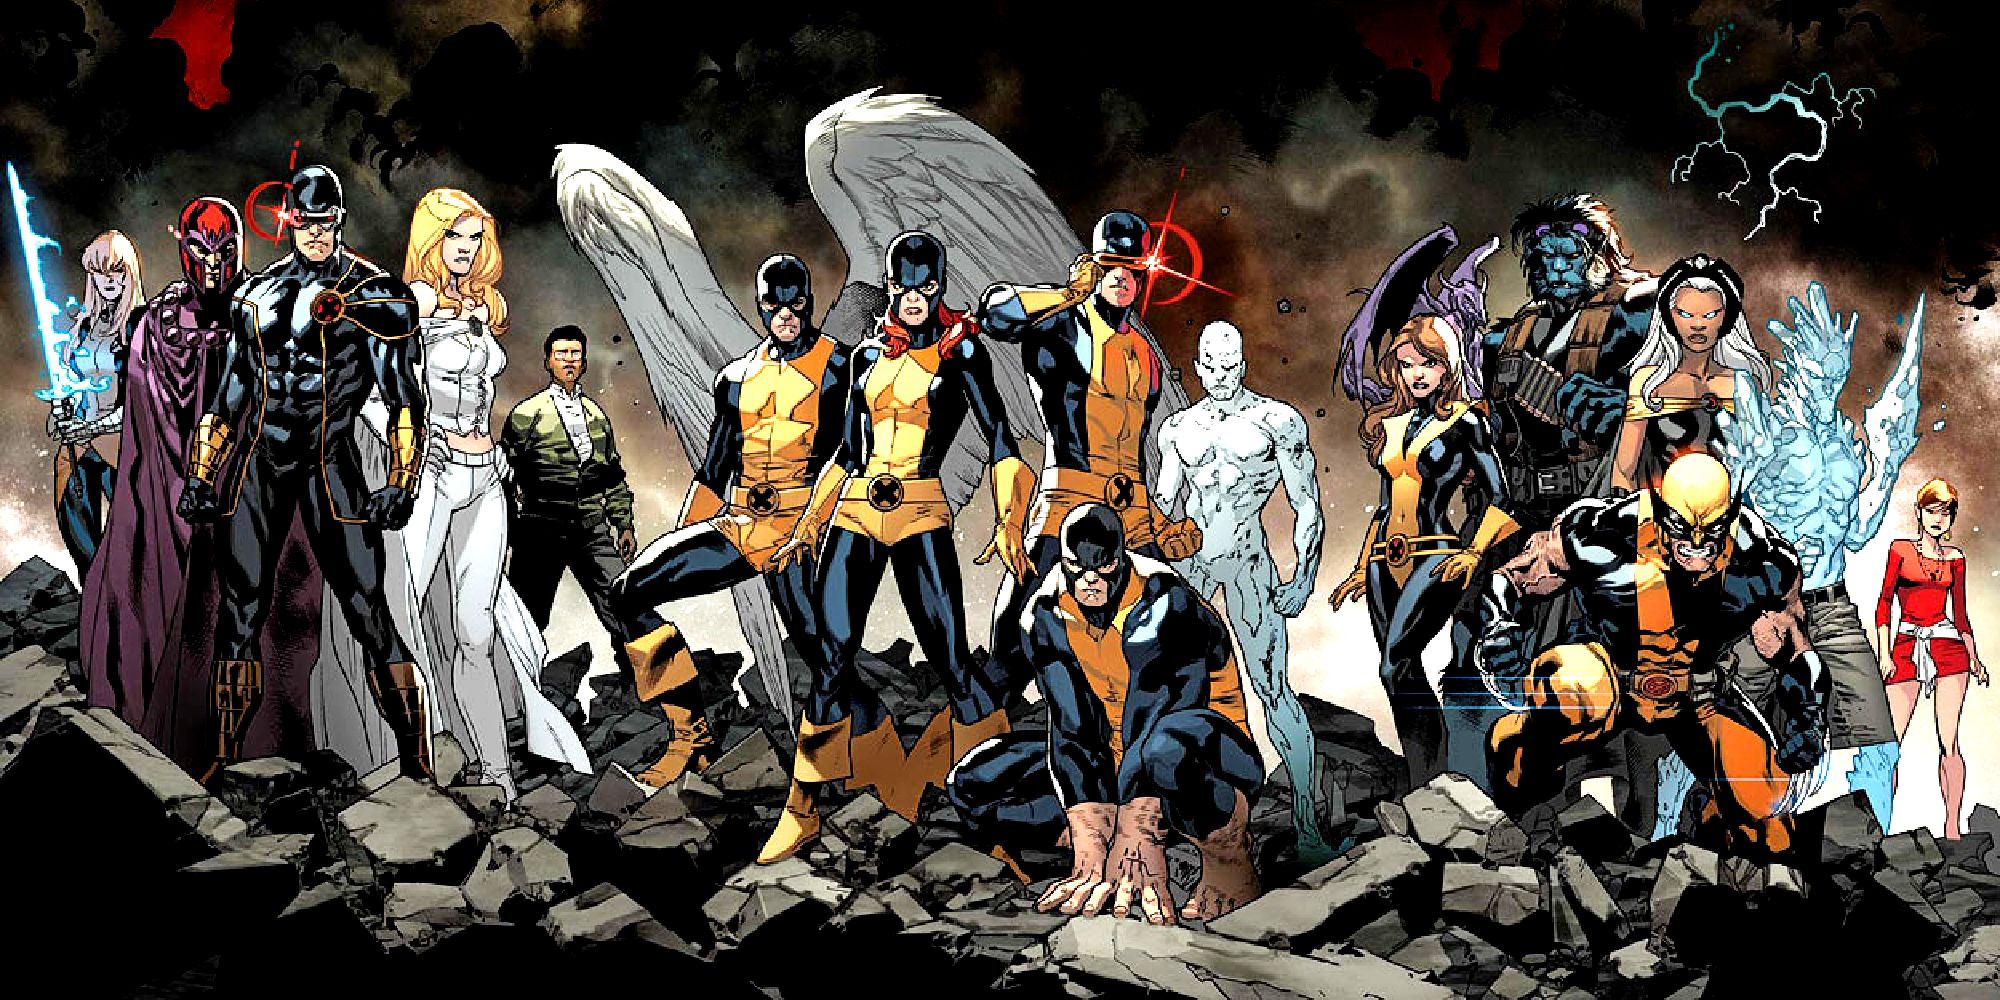 Equipes de X-Men em diferentes épocas na arte da Marvel Comics